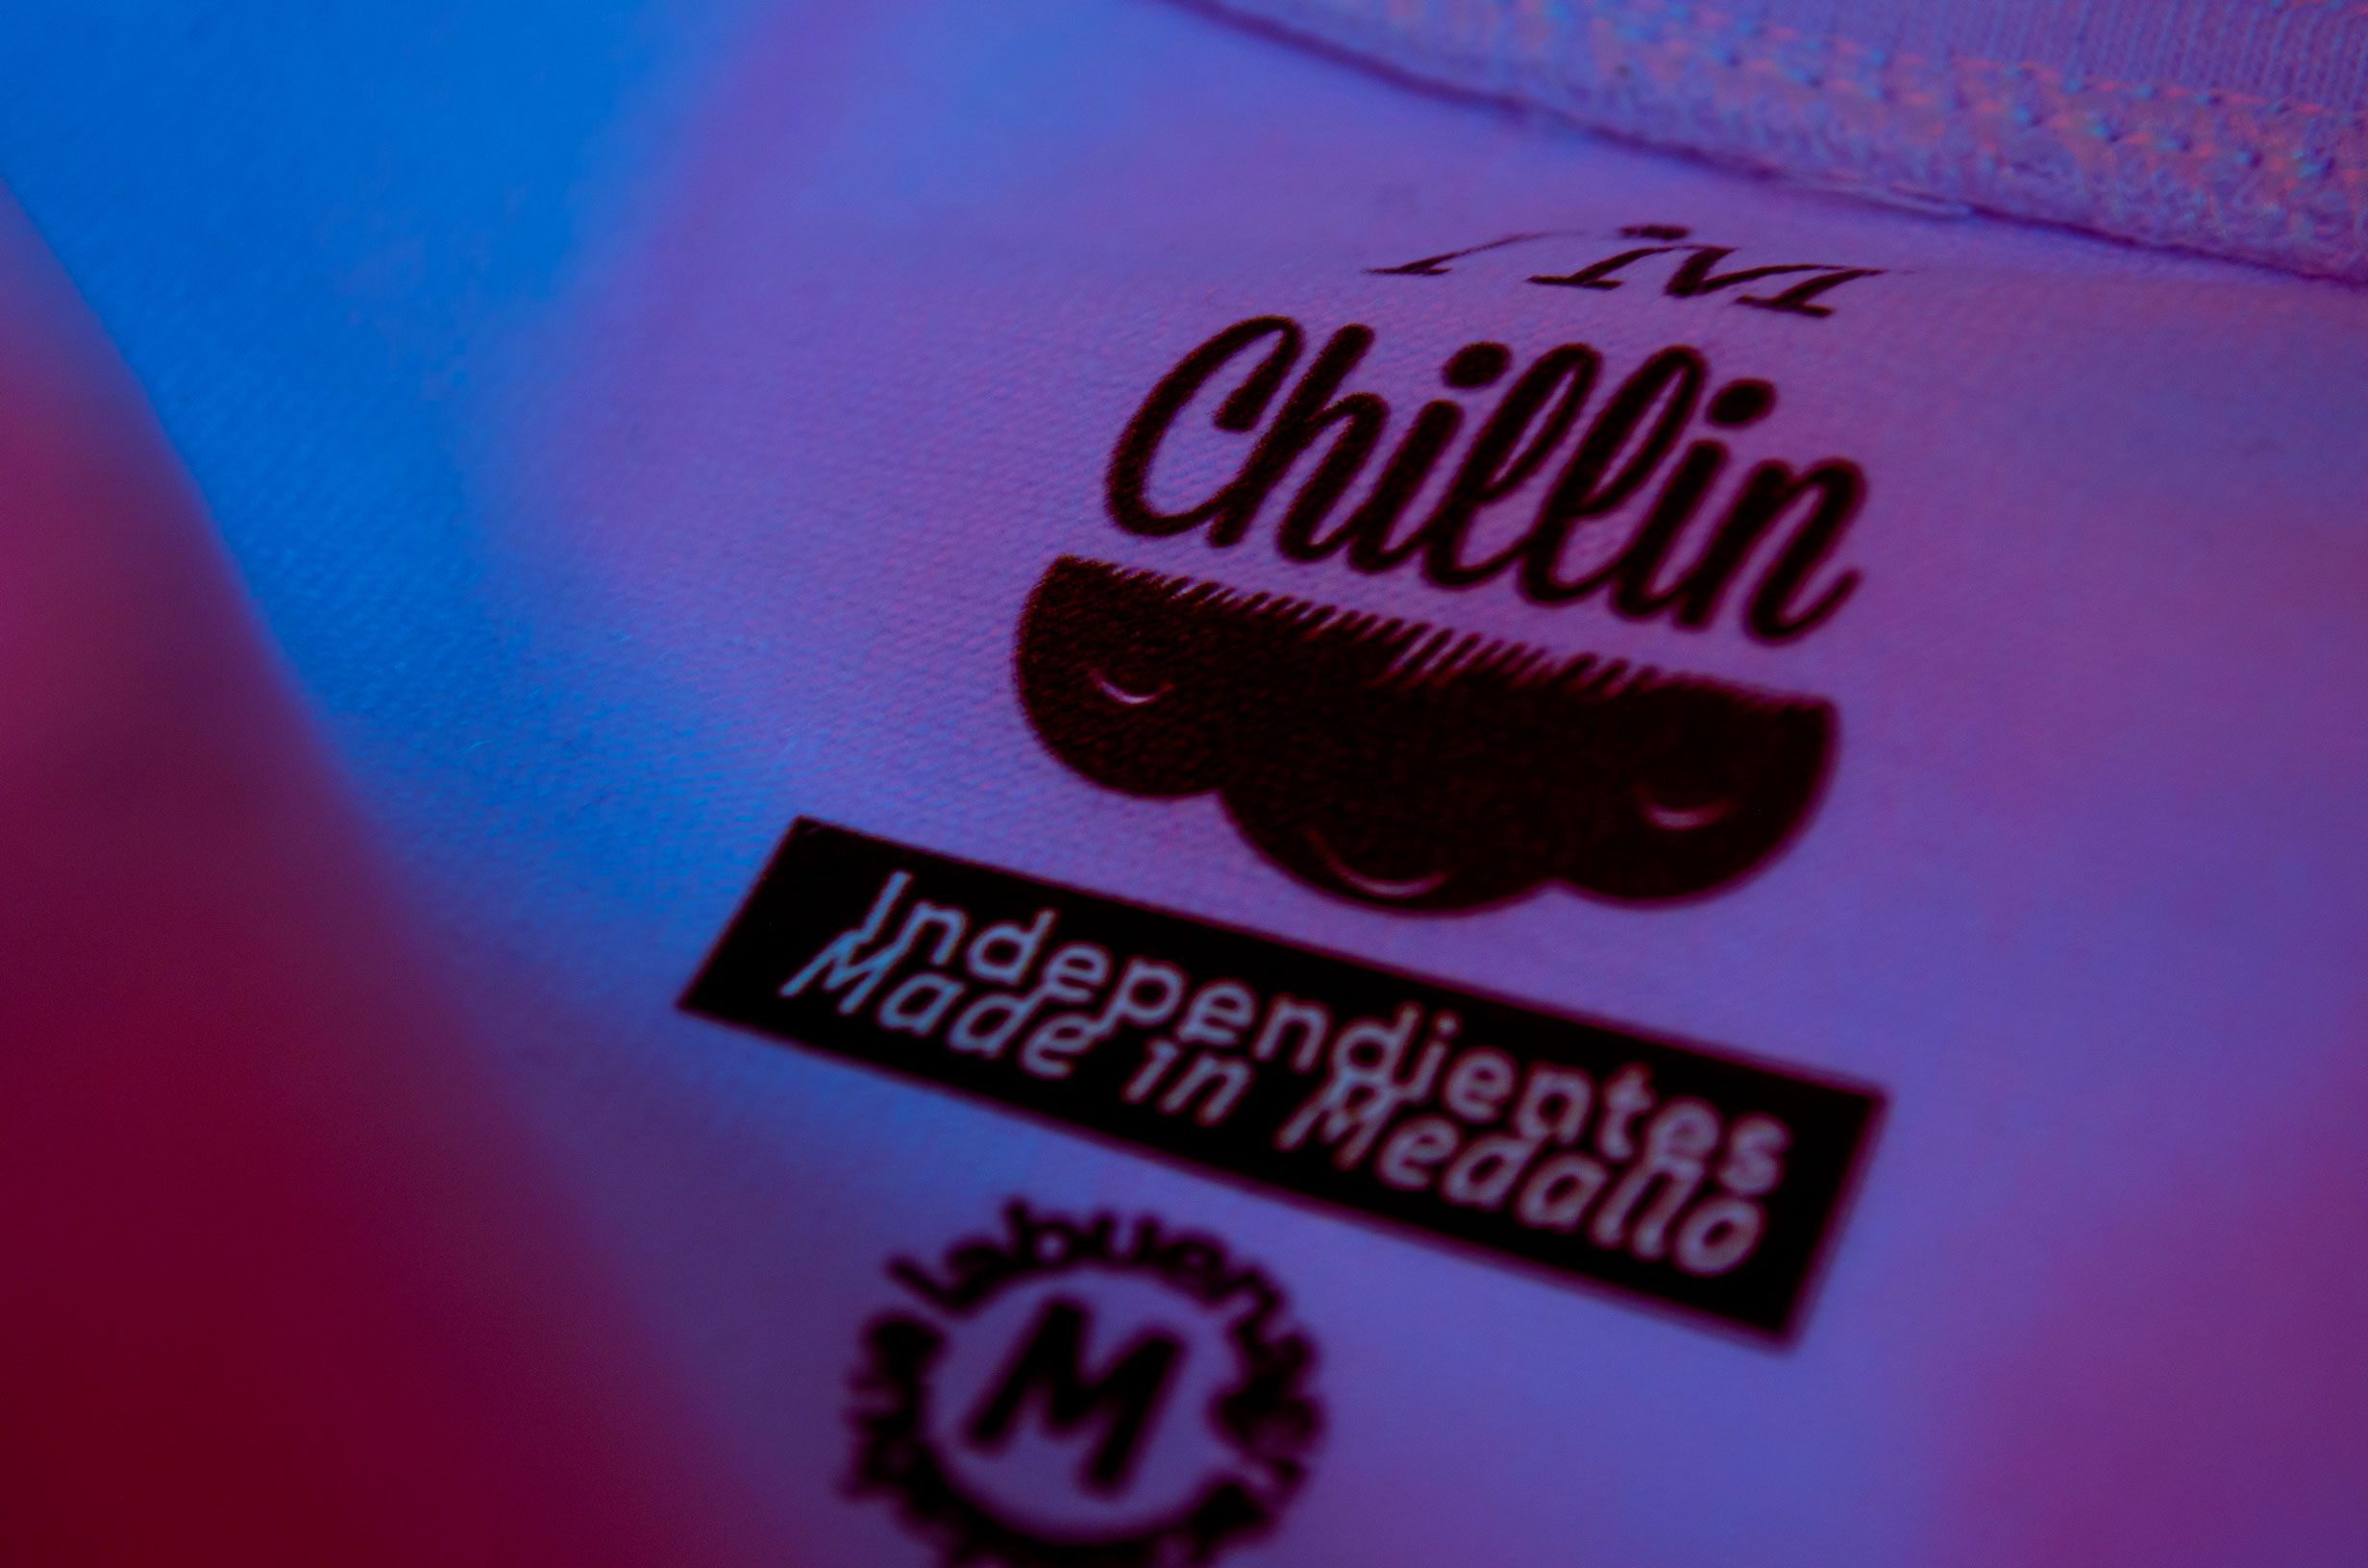 Marquilla de marca de ropa urbana. Es el logo de I'm Chillin que es una nube con cara amigable.